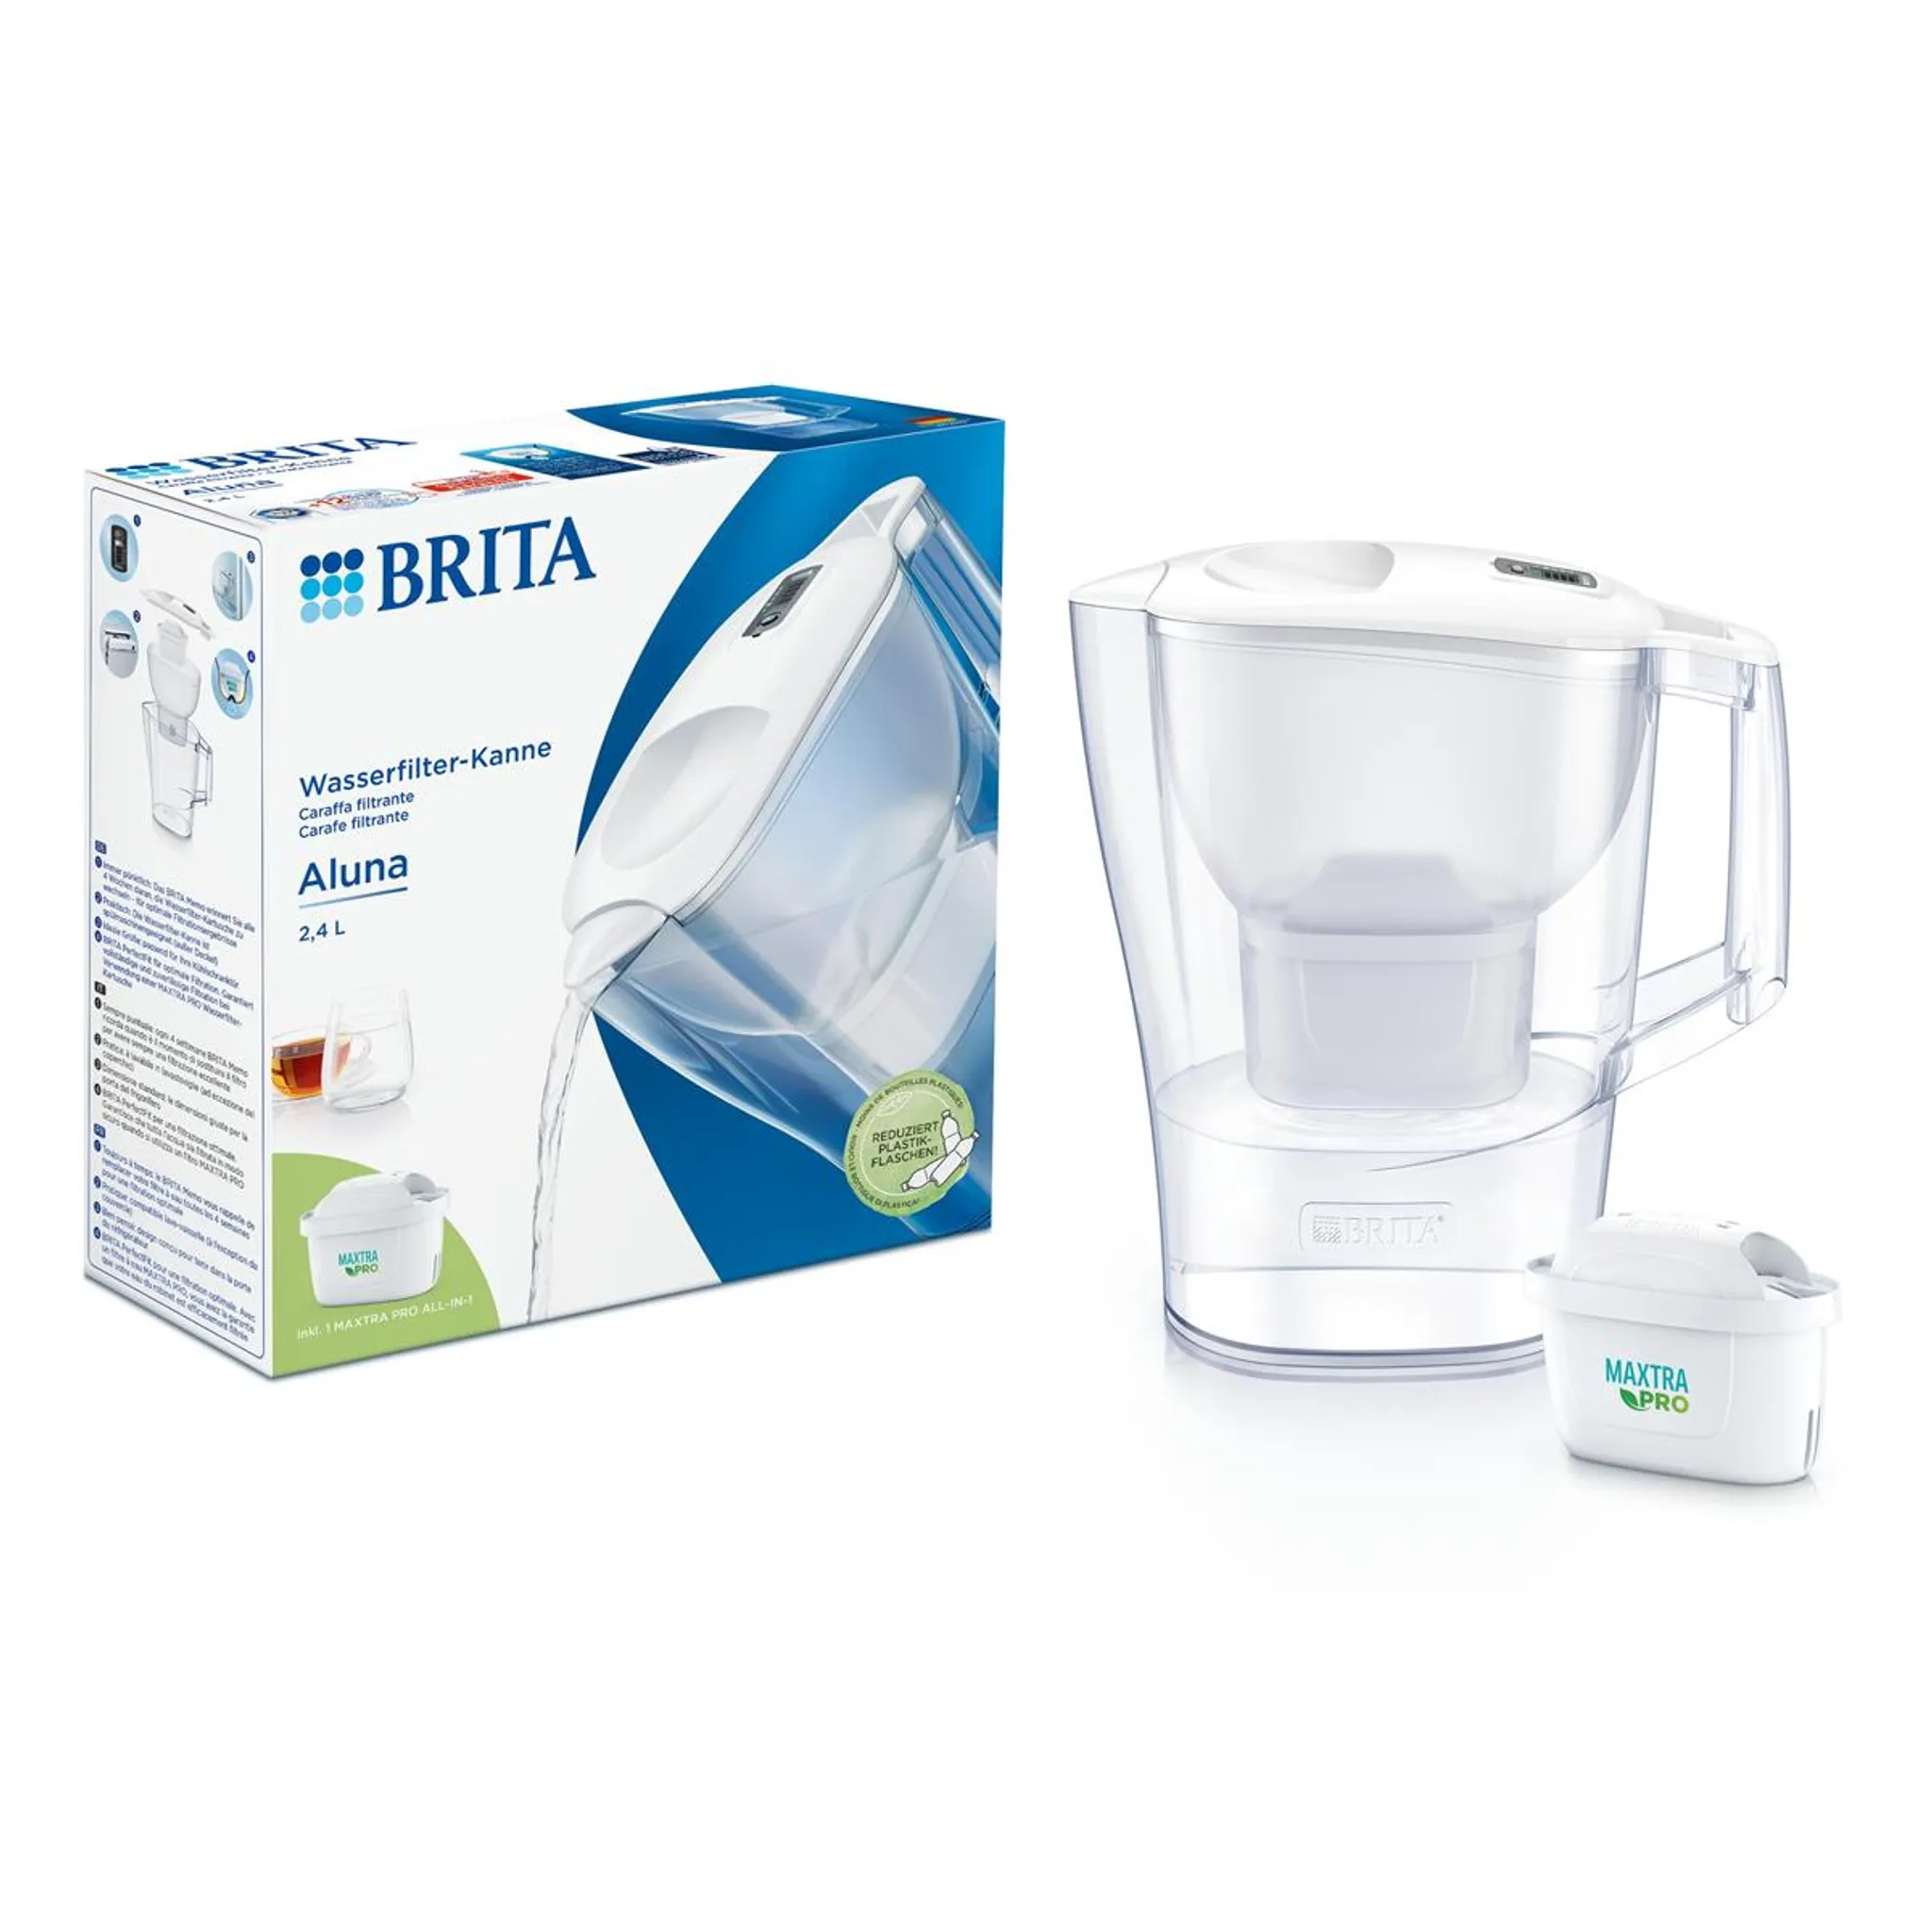 Brita Aluna Wasserfilter-Kanne 2,4L weiß